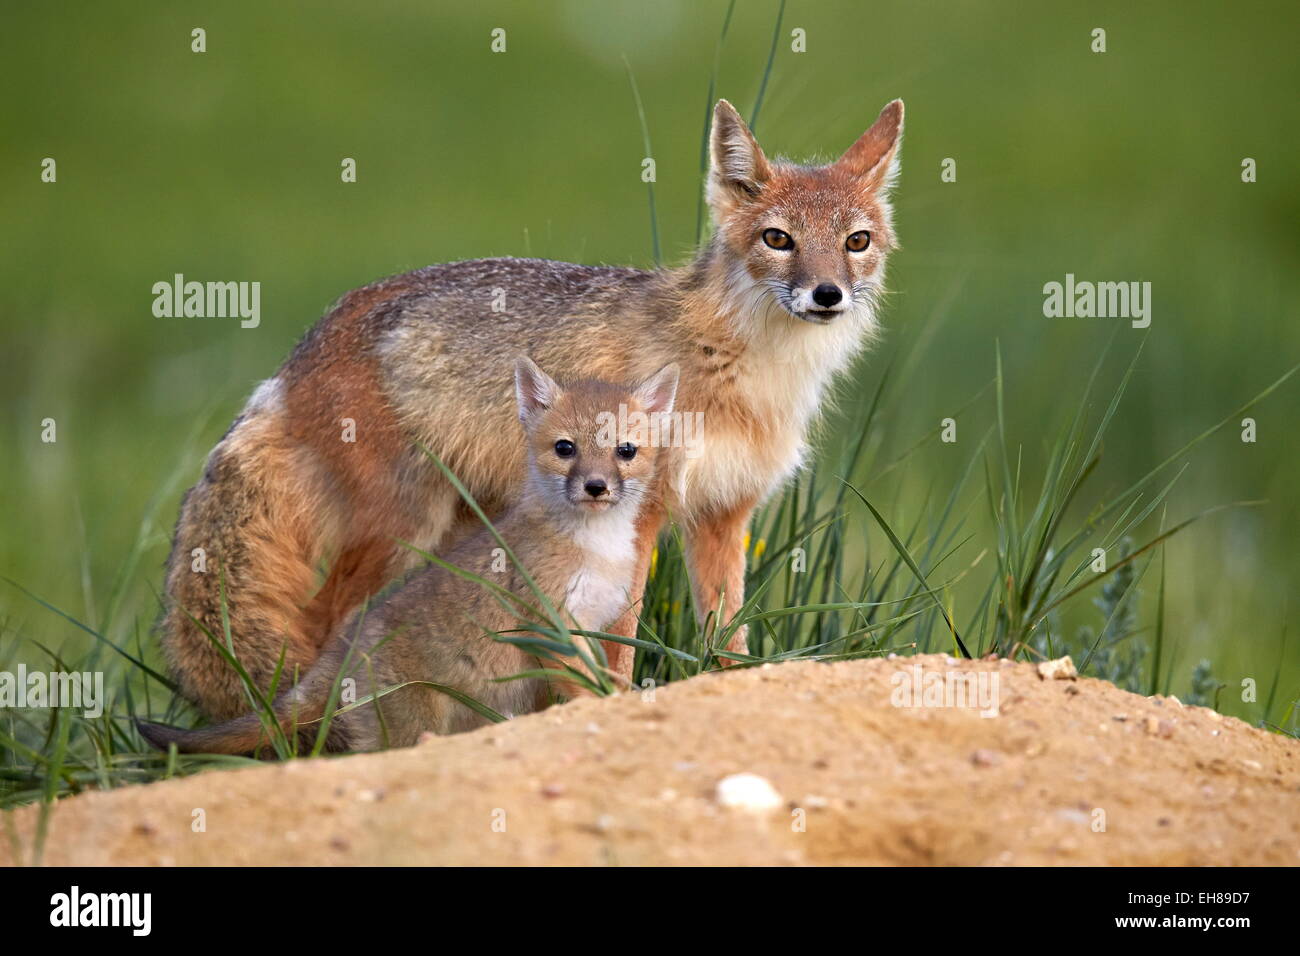 Swift volpe (Vulpes vulpes velox) adulto e kit, Pawnee prateria nazionale, Colorado, Stati Uniti d'America, America del Nord Foto Stock